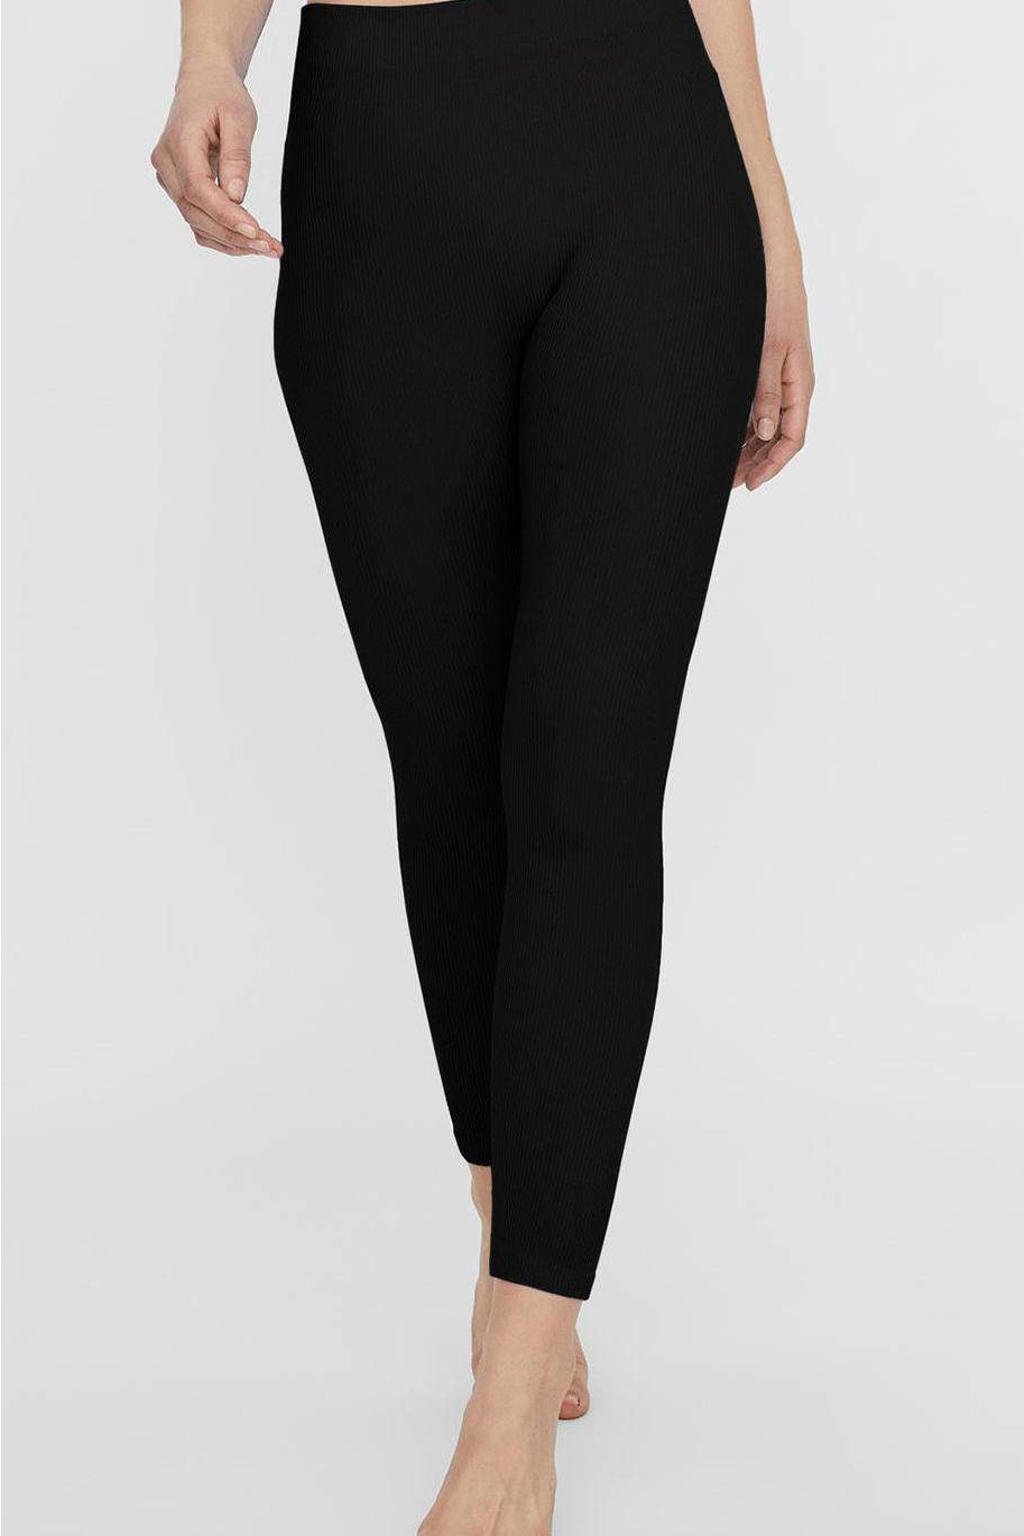 Zwarte dames VERO MODA legging van polyamide met skinny fit, high waist en elastische tailleband